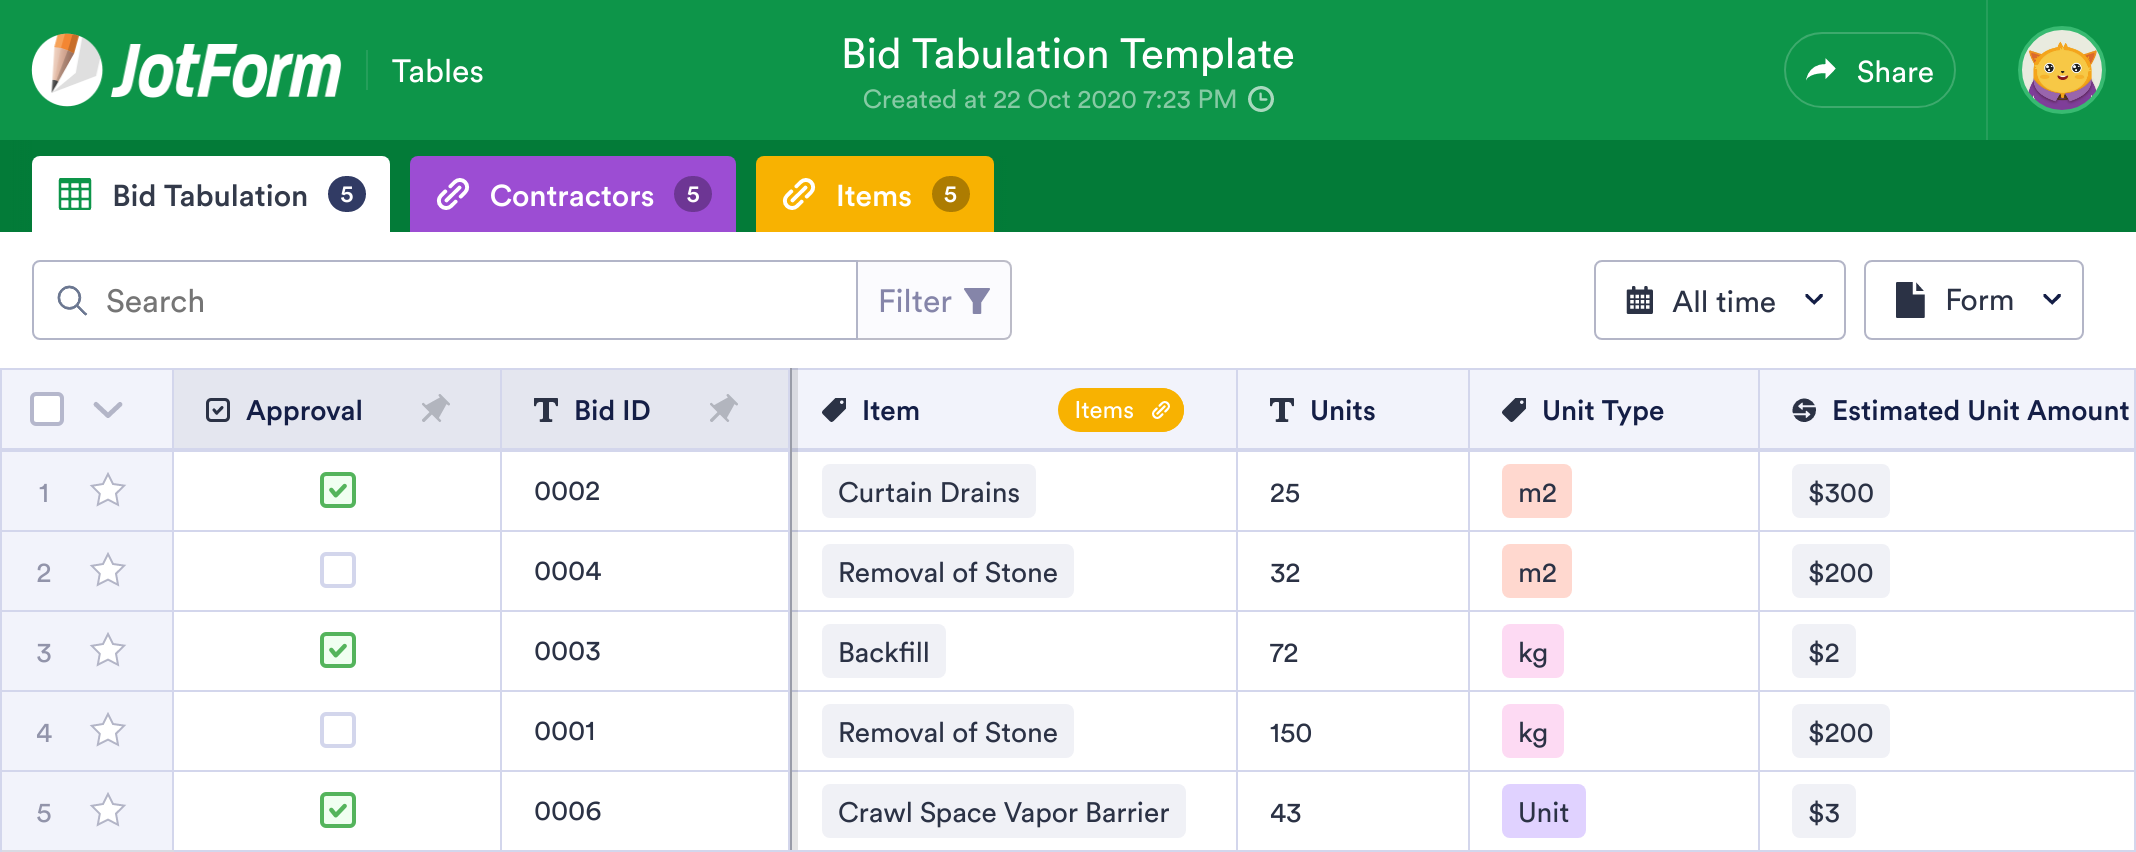 Bid Tabulation Template JotForm Tables